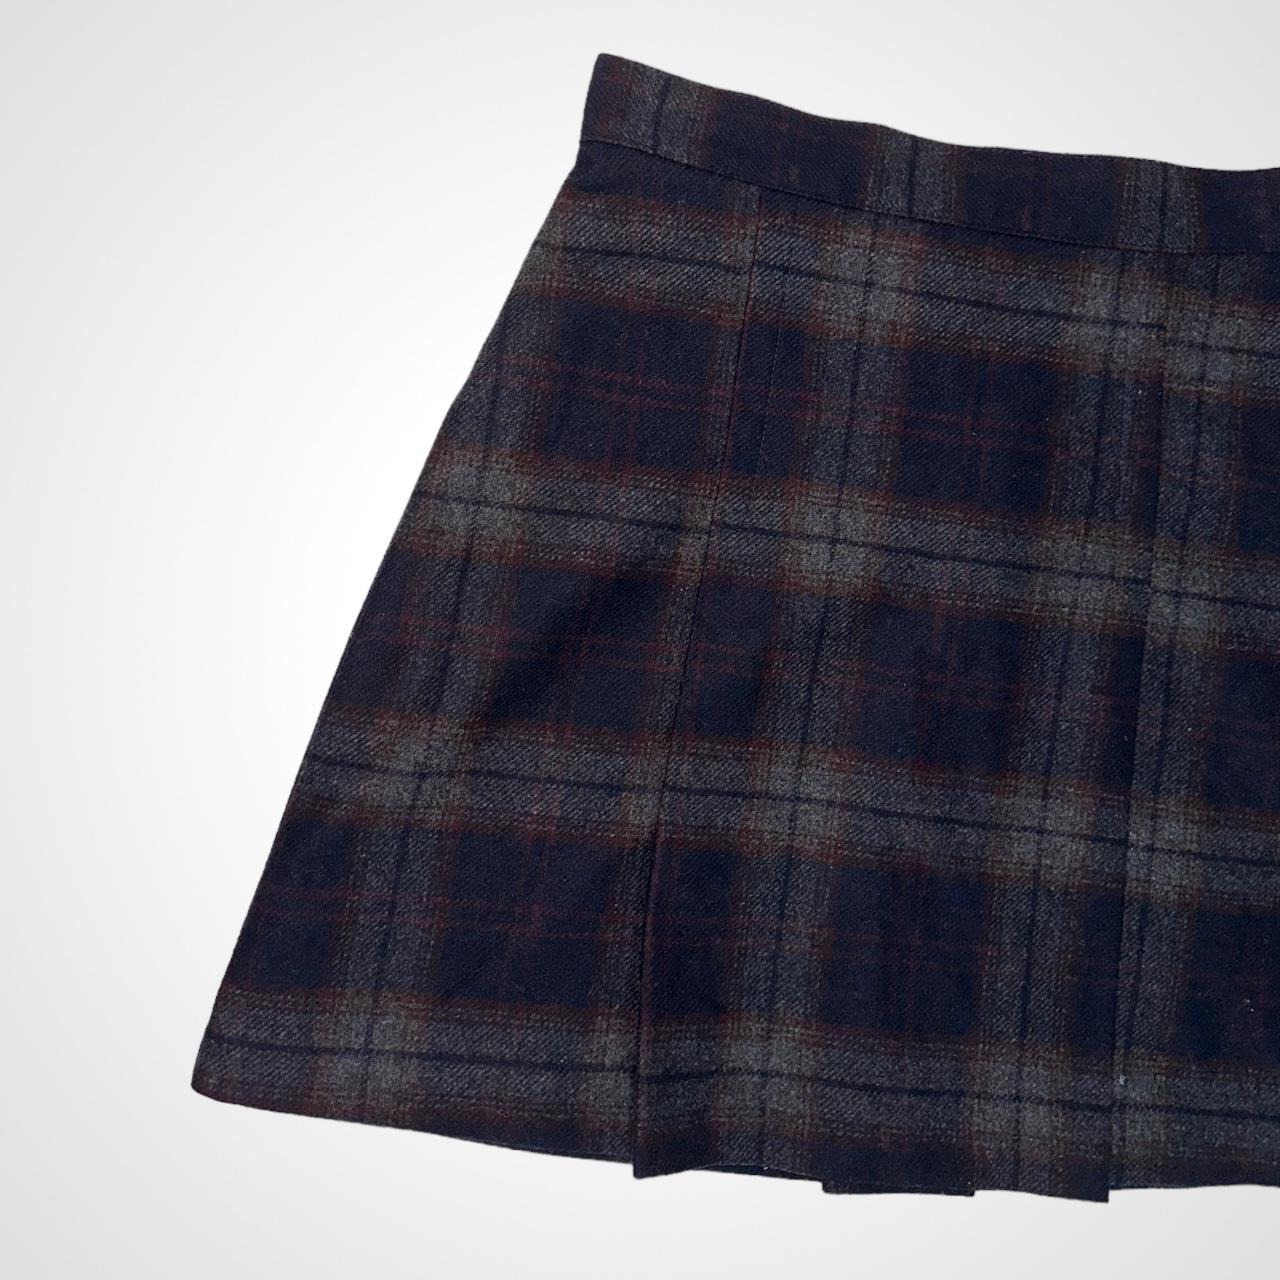 Vintage 90s woollen navy tartan pleated mini skirt